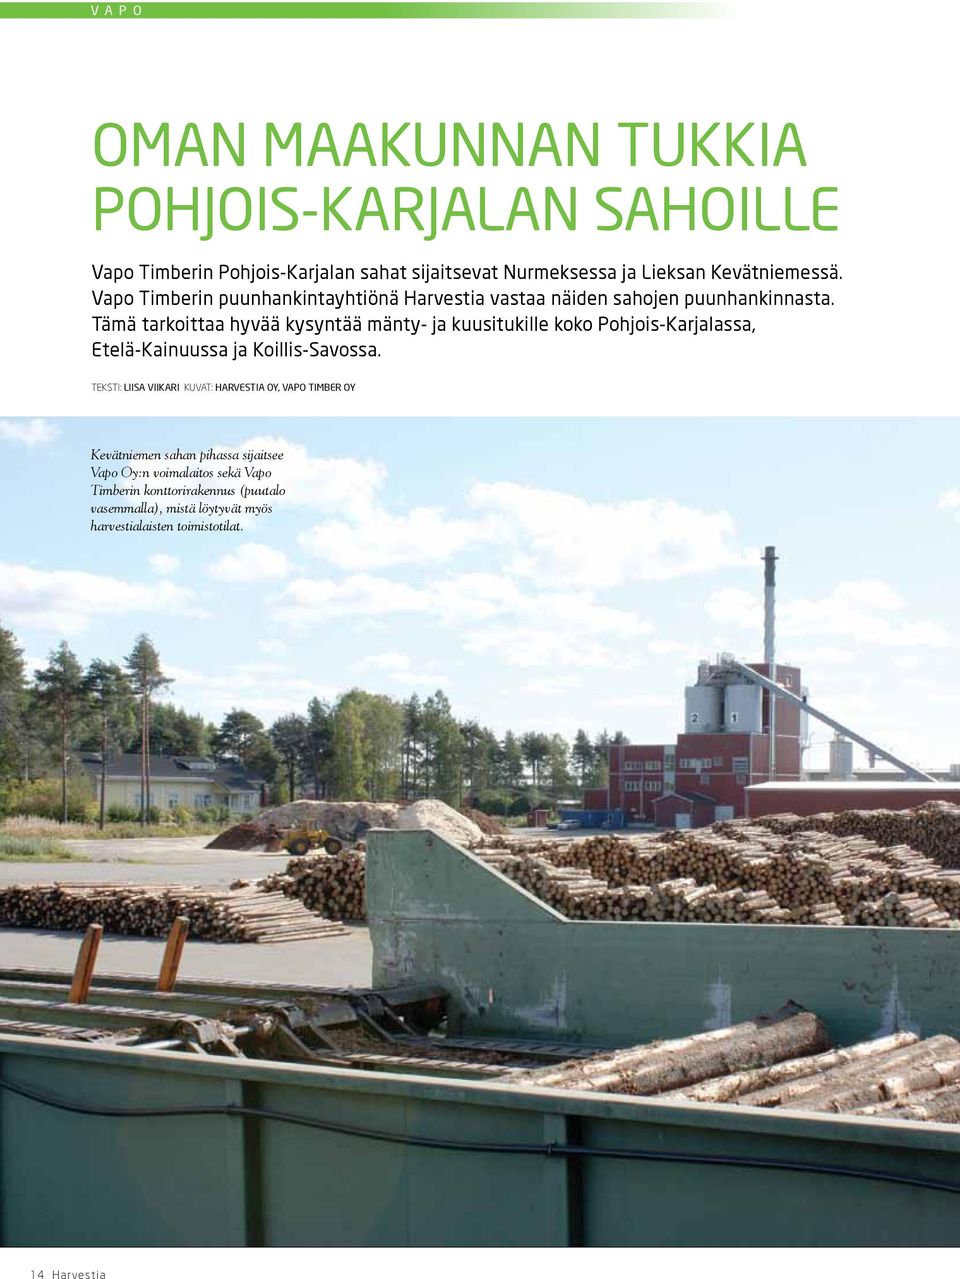 Tämä tarkoittaa hyvää kysyntää mänty- ja kuusitukille koko Pohjois-Karjalassa, Etelä-Kainuussa ja Koillis-Savossa.